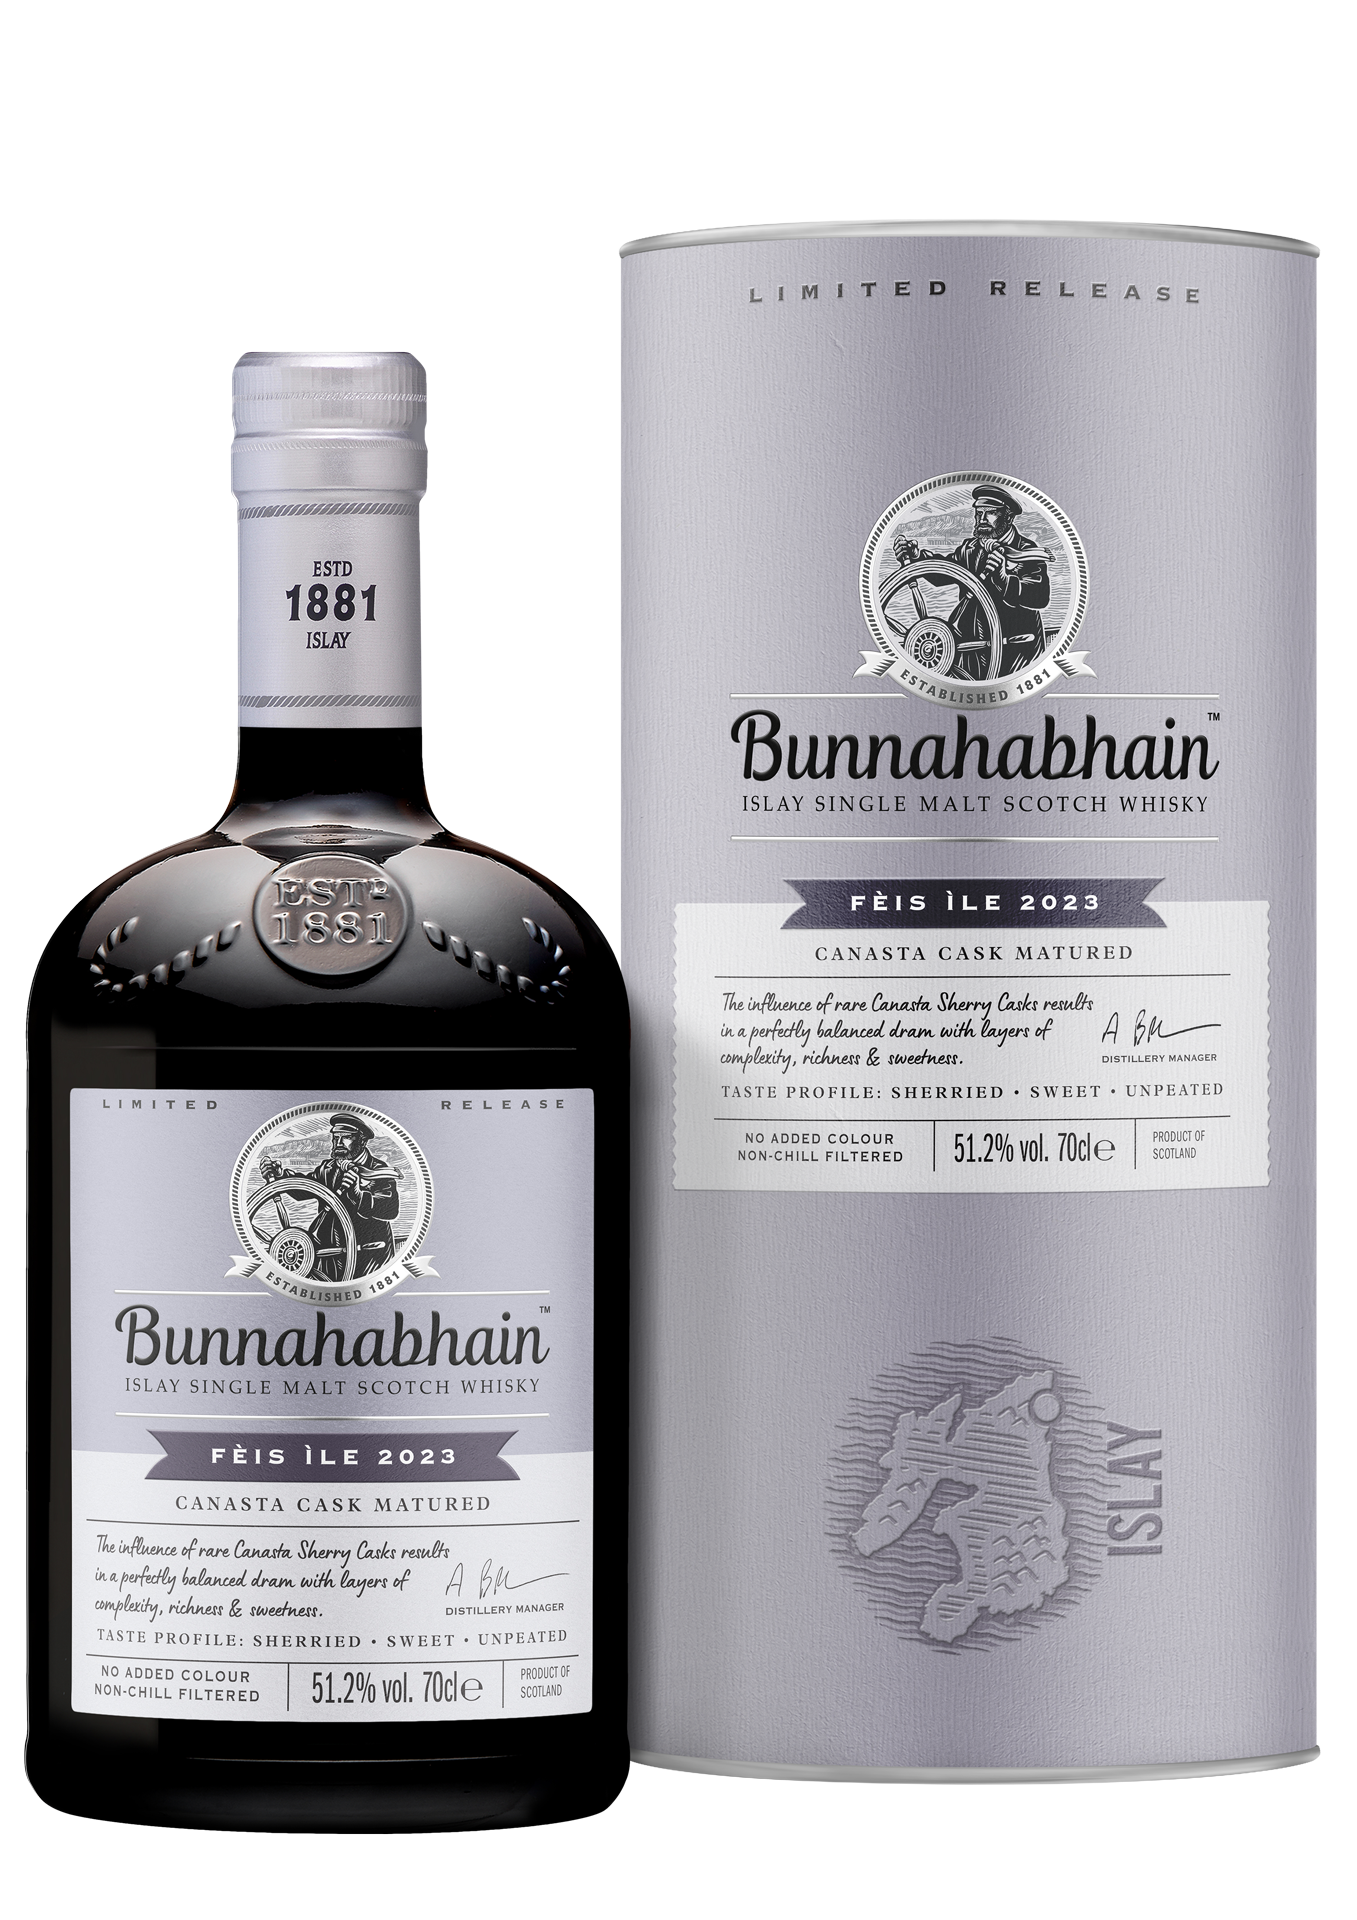 Whisky Wednesday Review: New Bunnahabhain Feis Ile 2023